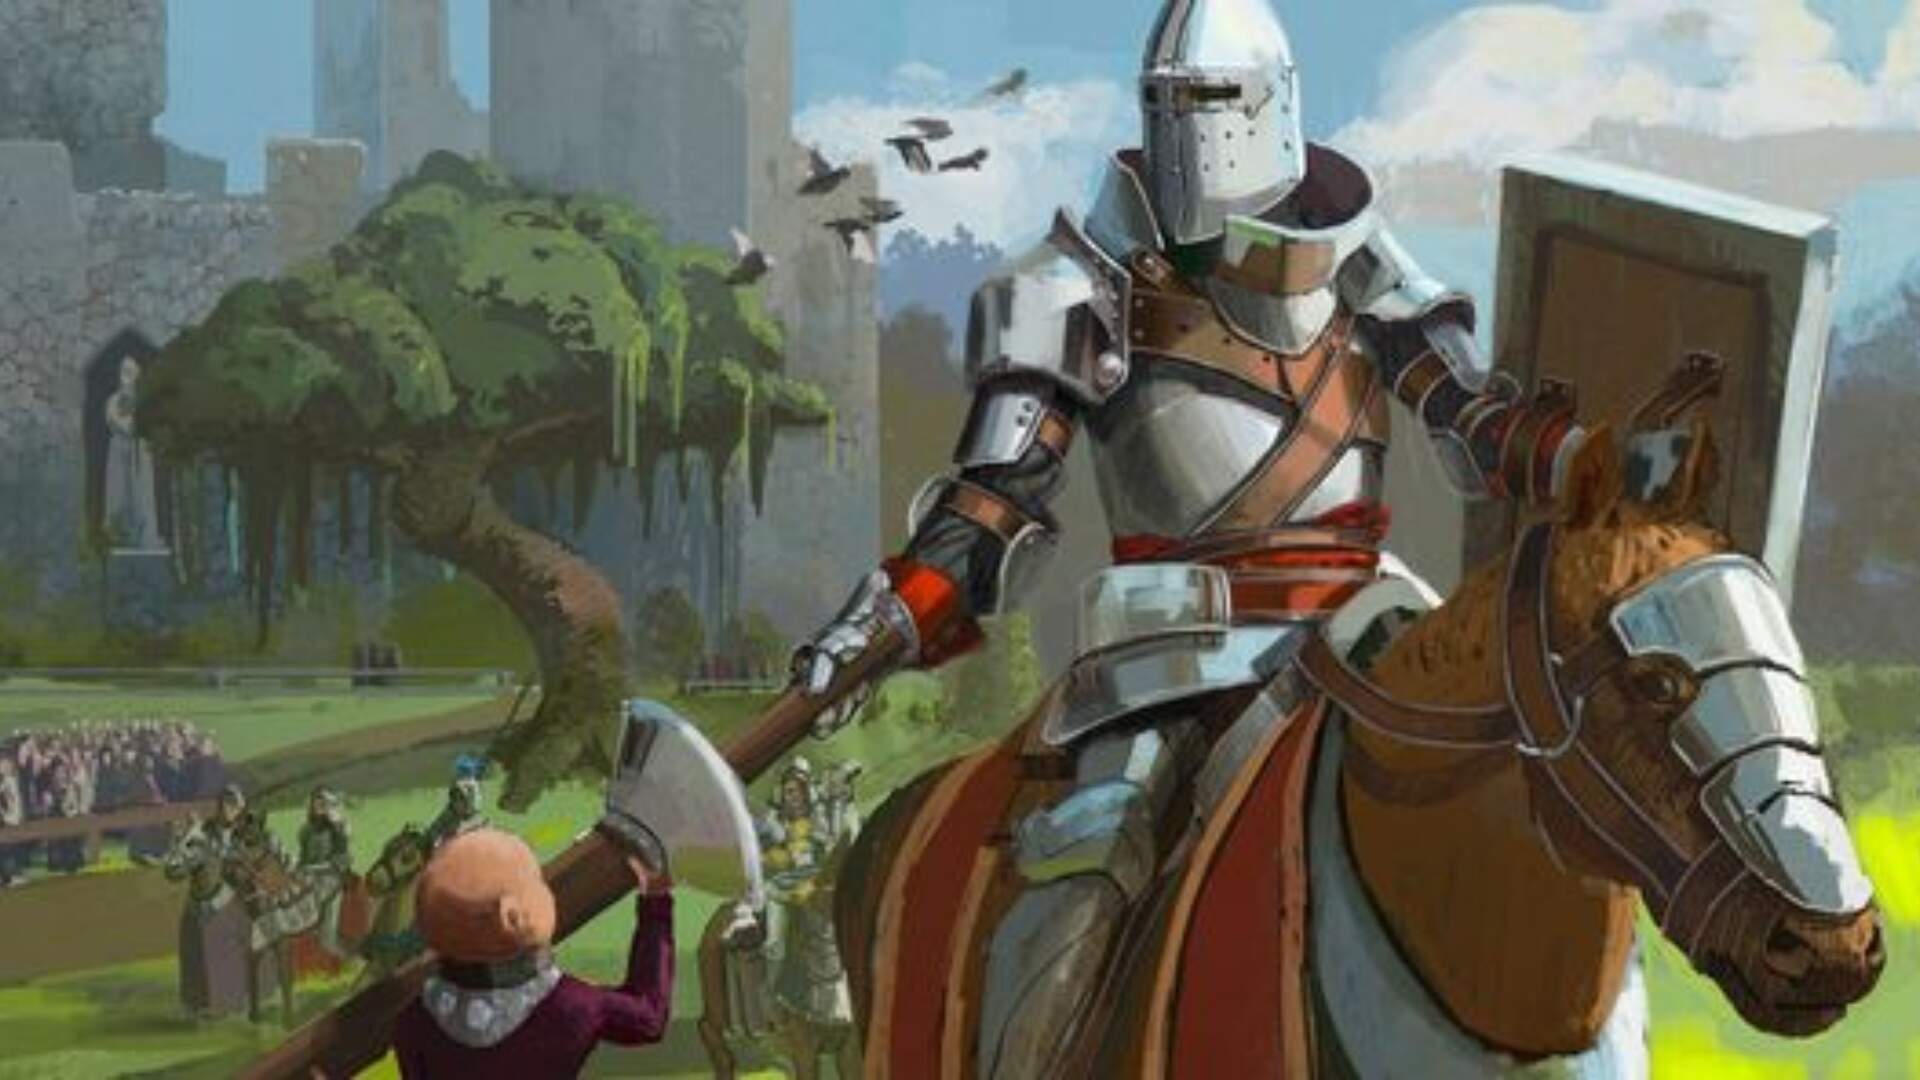 A Knight of the Seven Kingdoms: The Hedge Knight: Novo spin-off de Game of Thrones é anunciado - Metropolitana FM